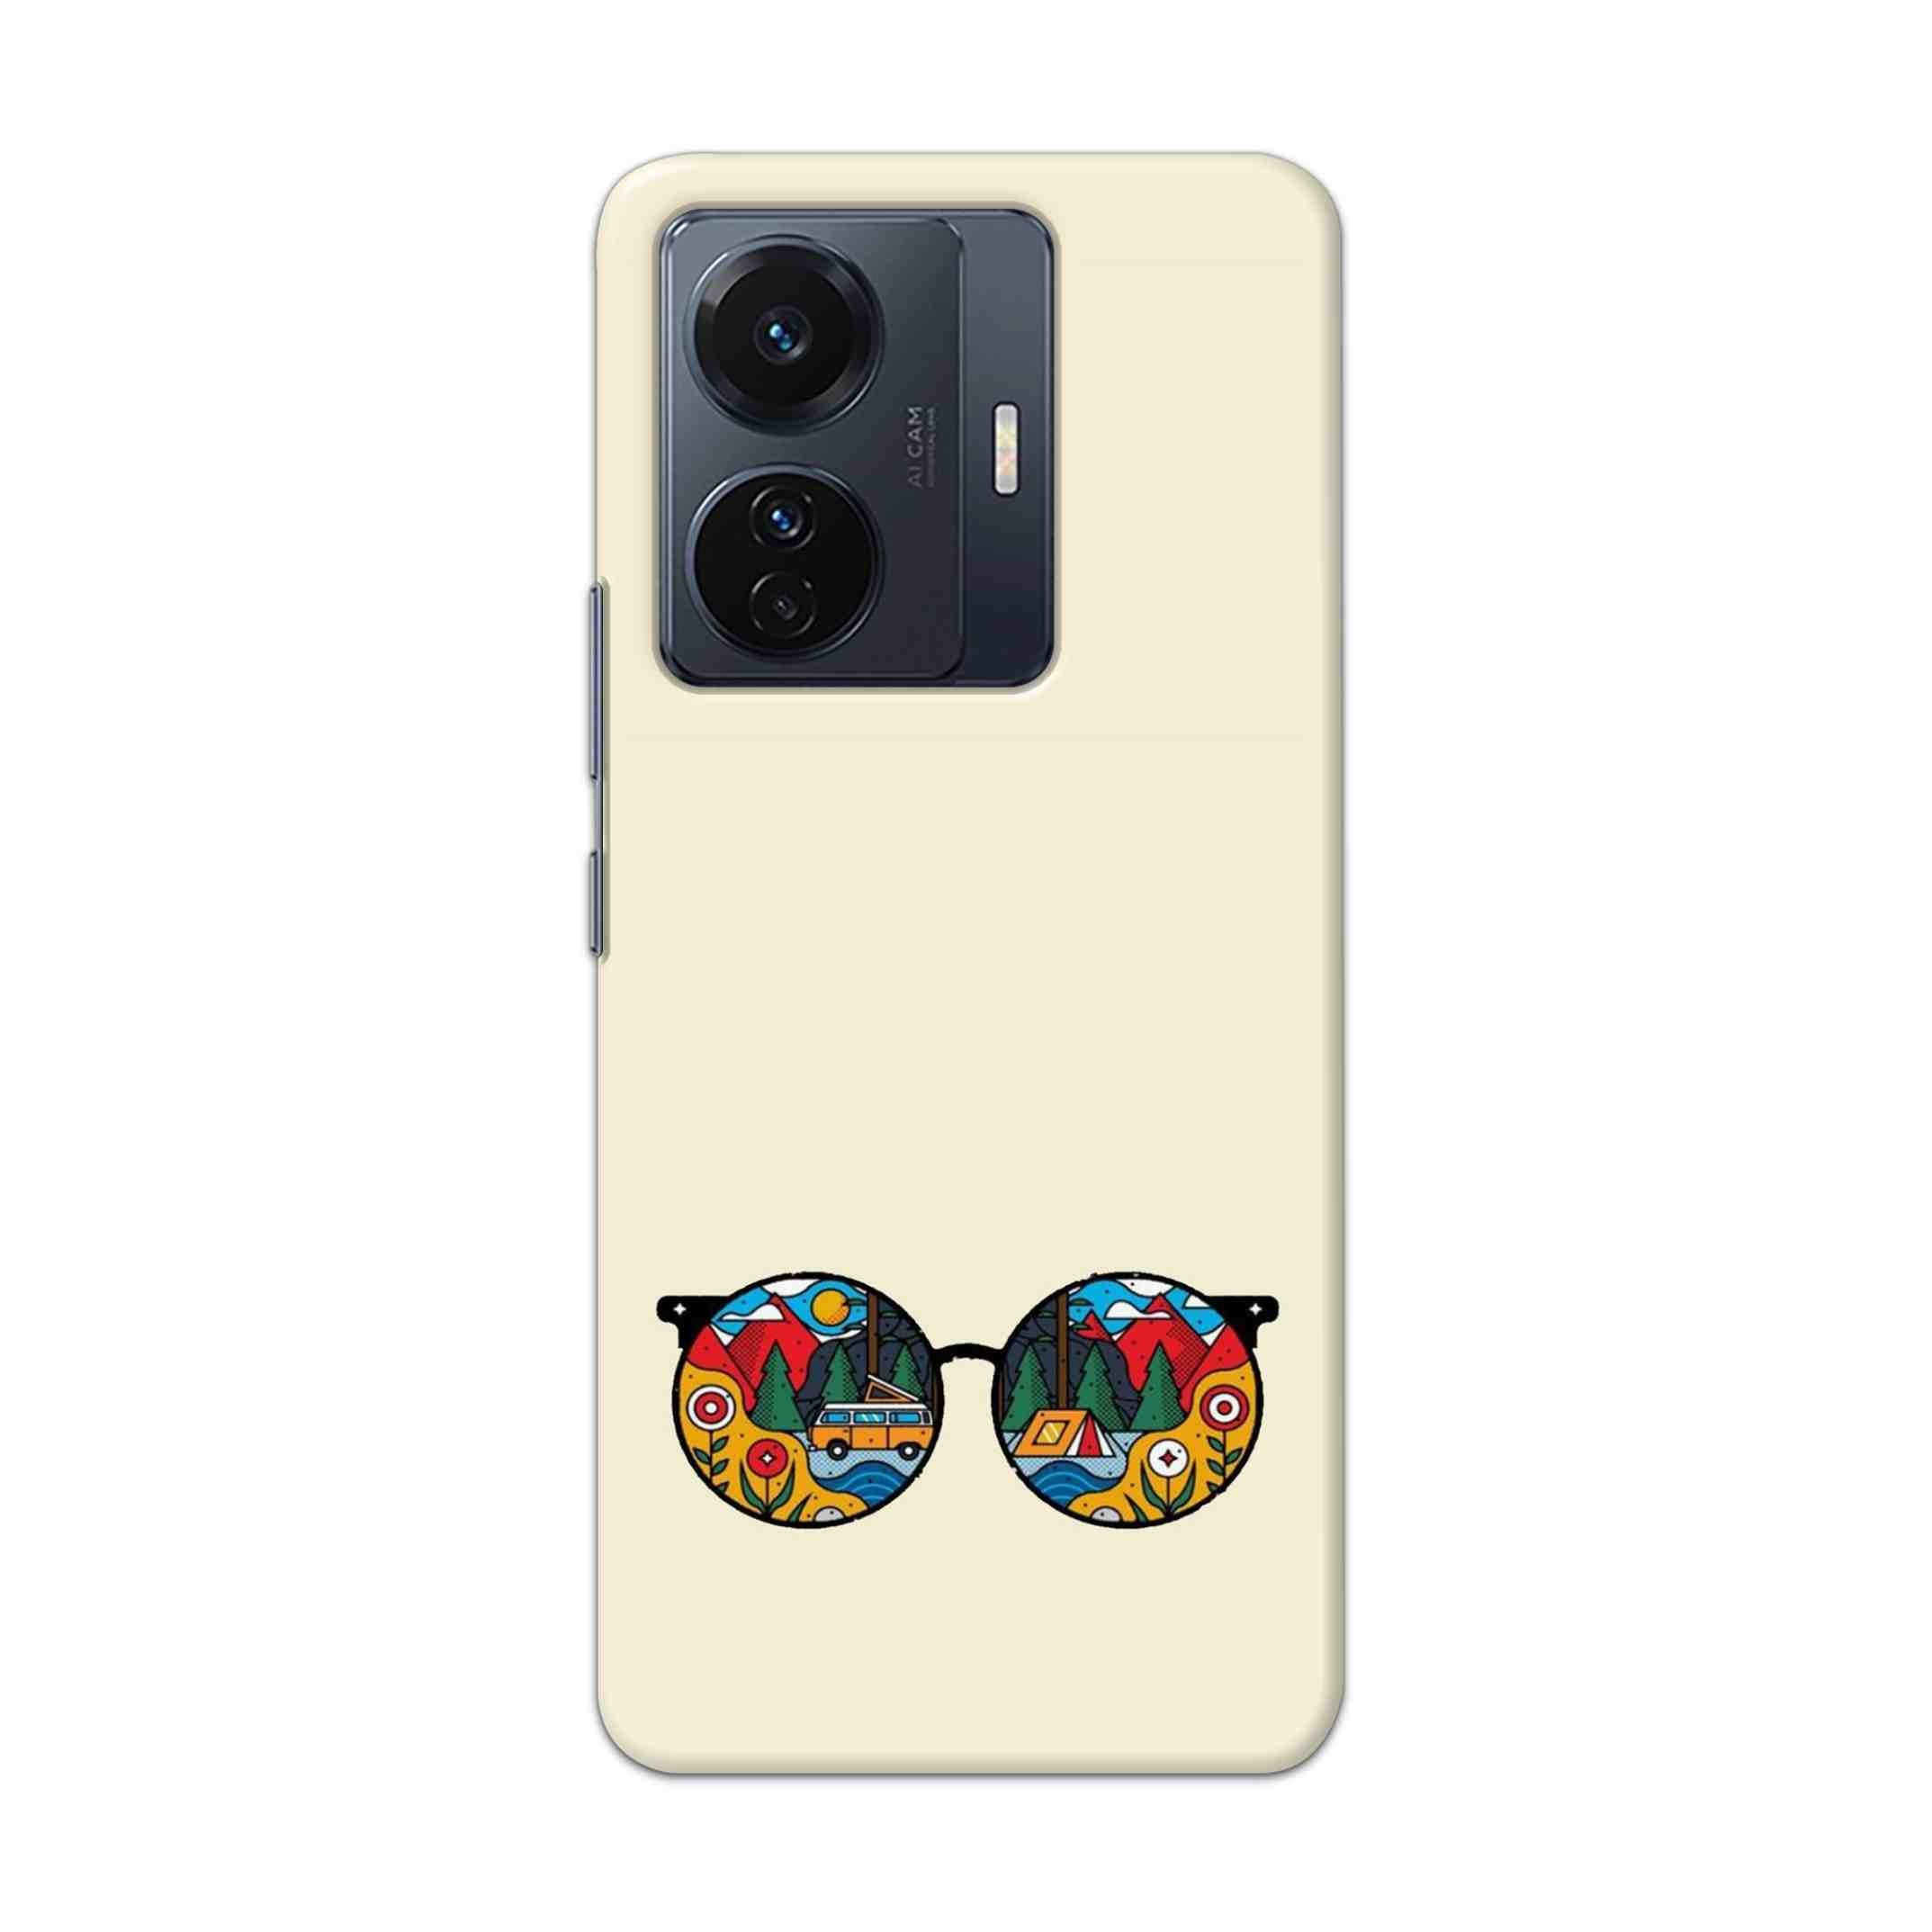 Buy Rainbow Sunglasses Hard Back Mobile Phone Case Cover For Vivo T1 Pro 5G Online